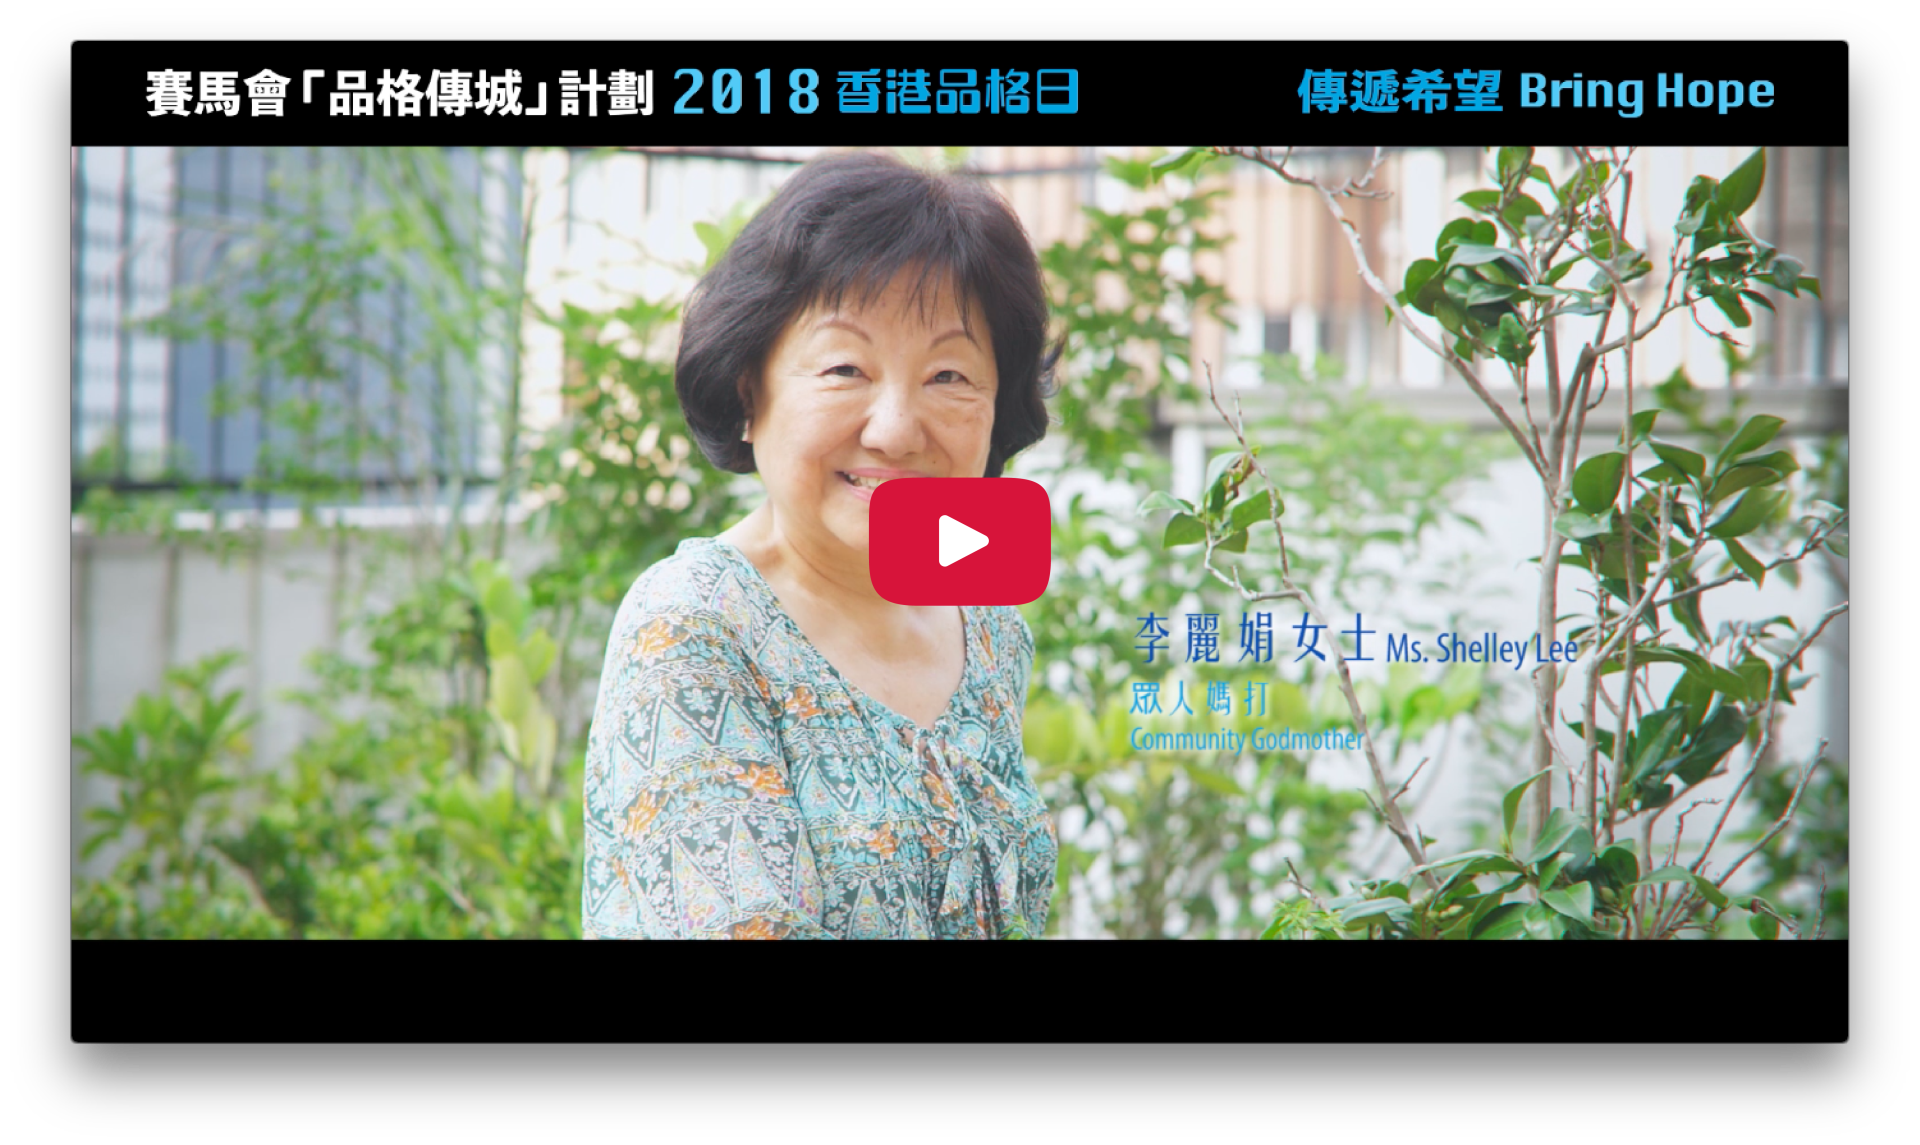 2018 Character Day Hong Kong Ambassadors - Shelley Lee